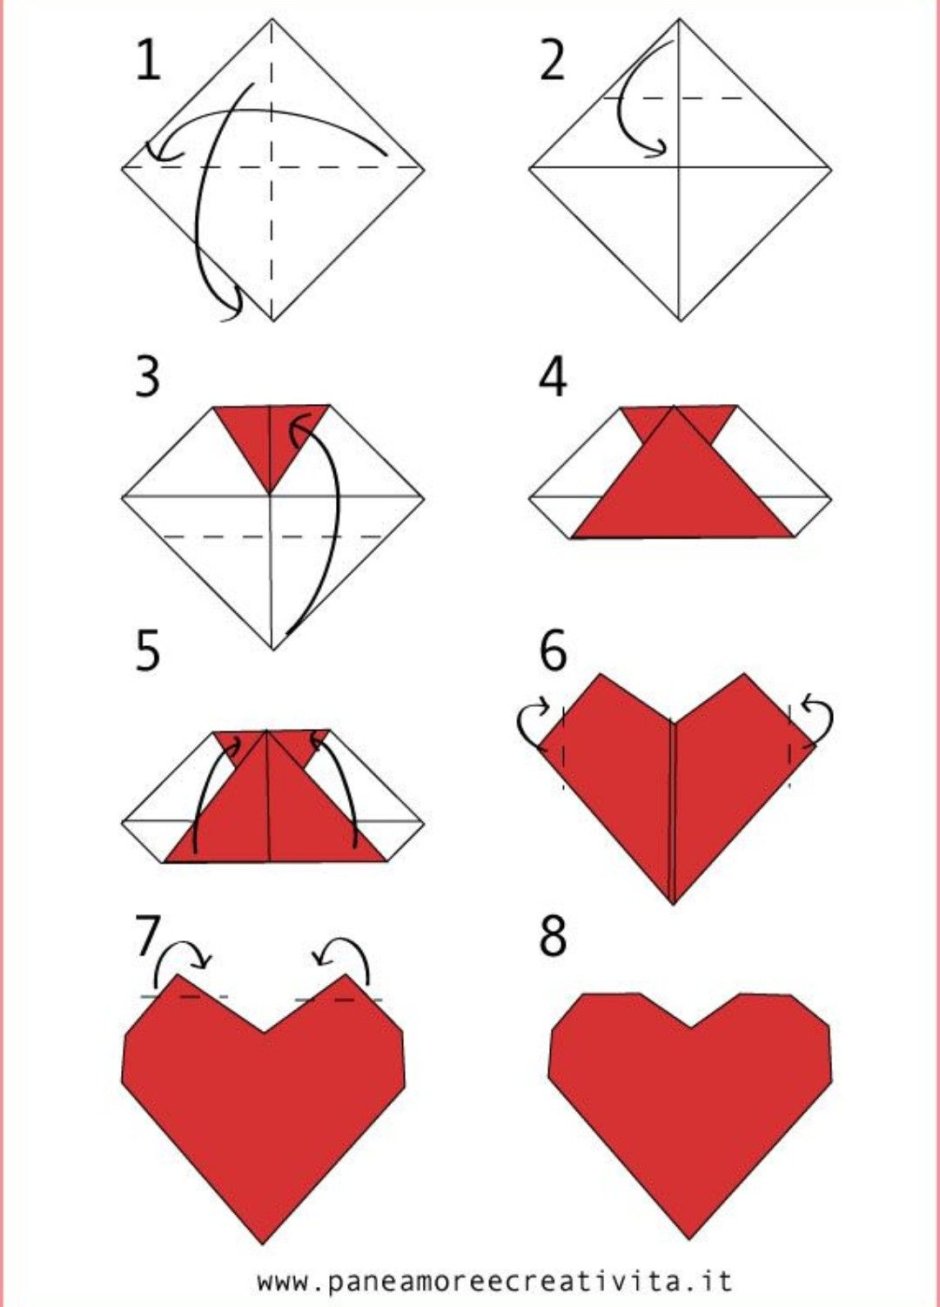 Как сложить сердечко из бумаги а4